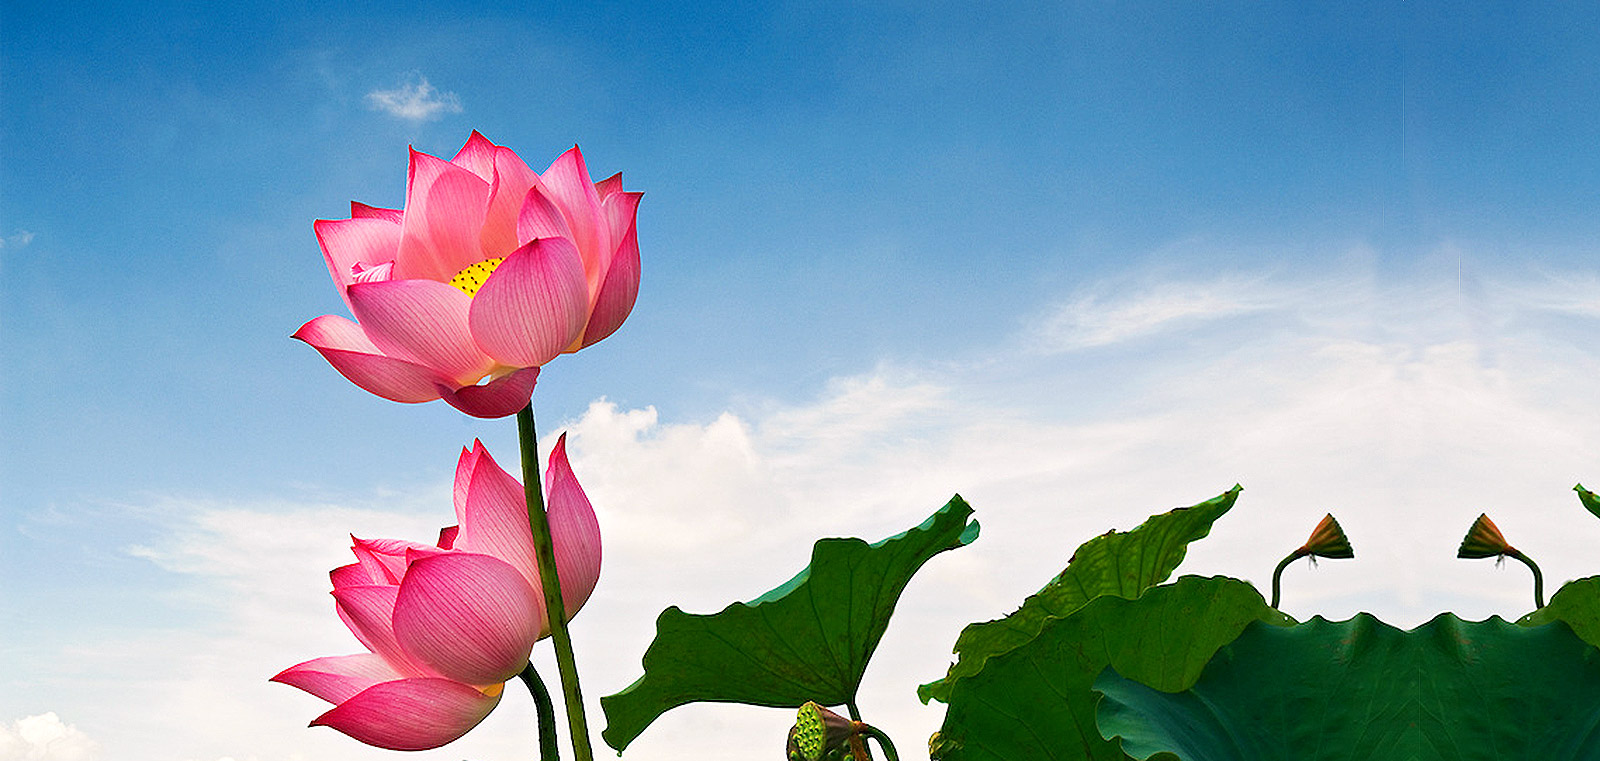 Hoa sen – biểu tượng của Phật giáo